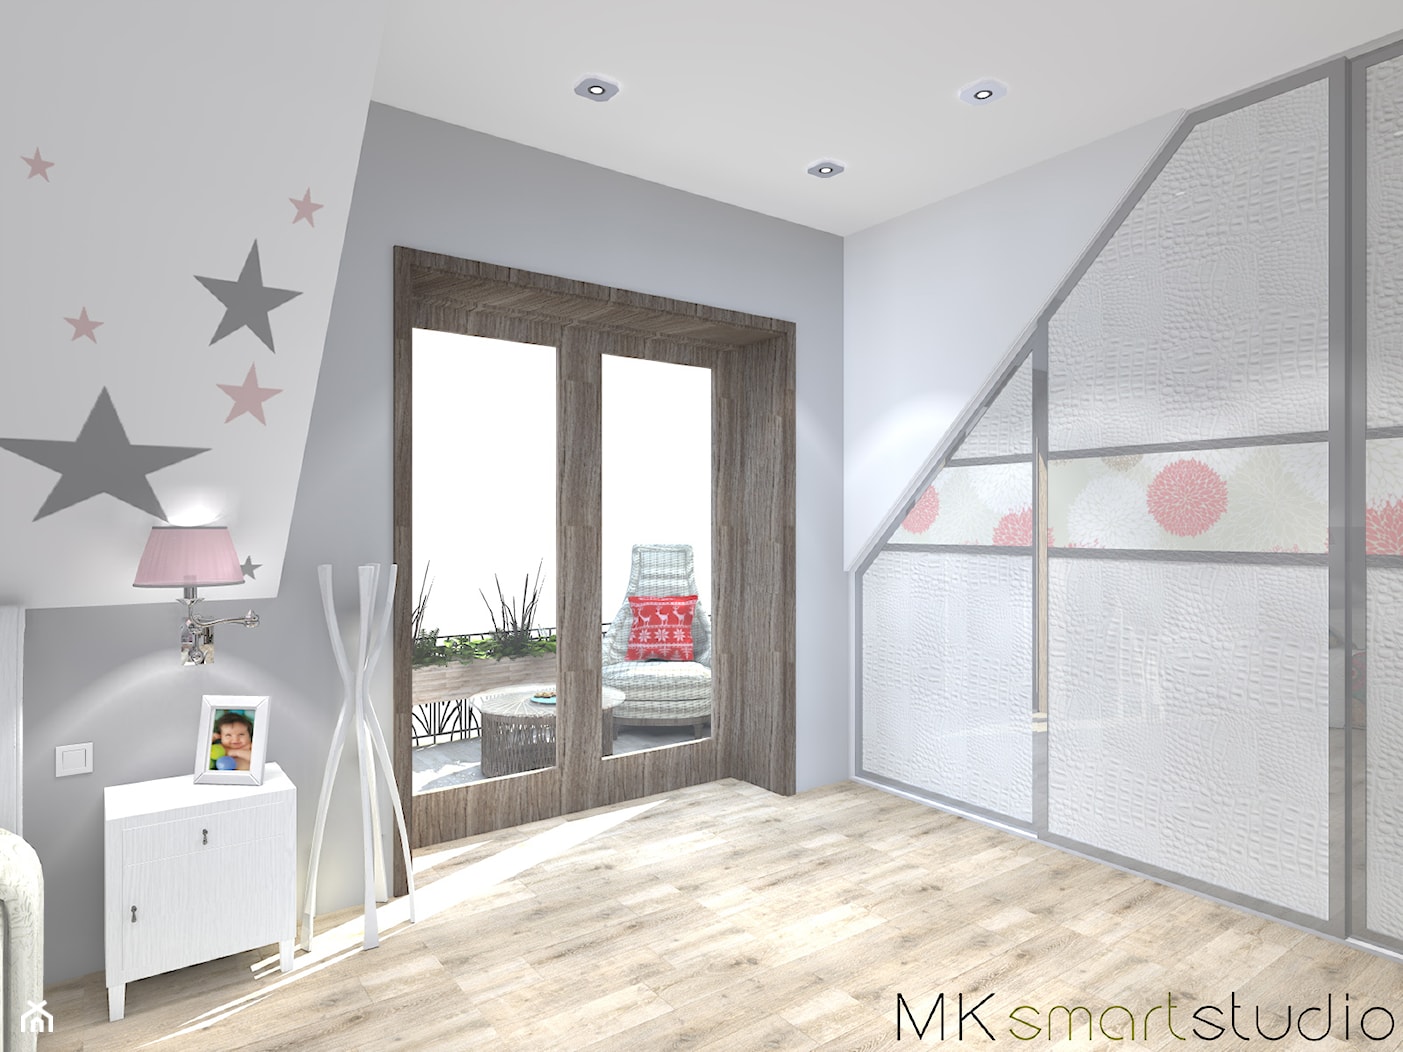 Sypialnia połączona z kącikiem dla noworodka - Sypialnia, styl skandynawski - zdjęcie od MKsmartstudio - Homebook